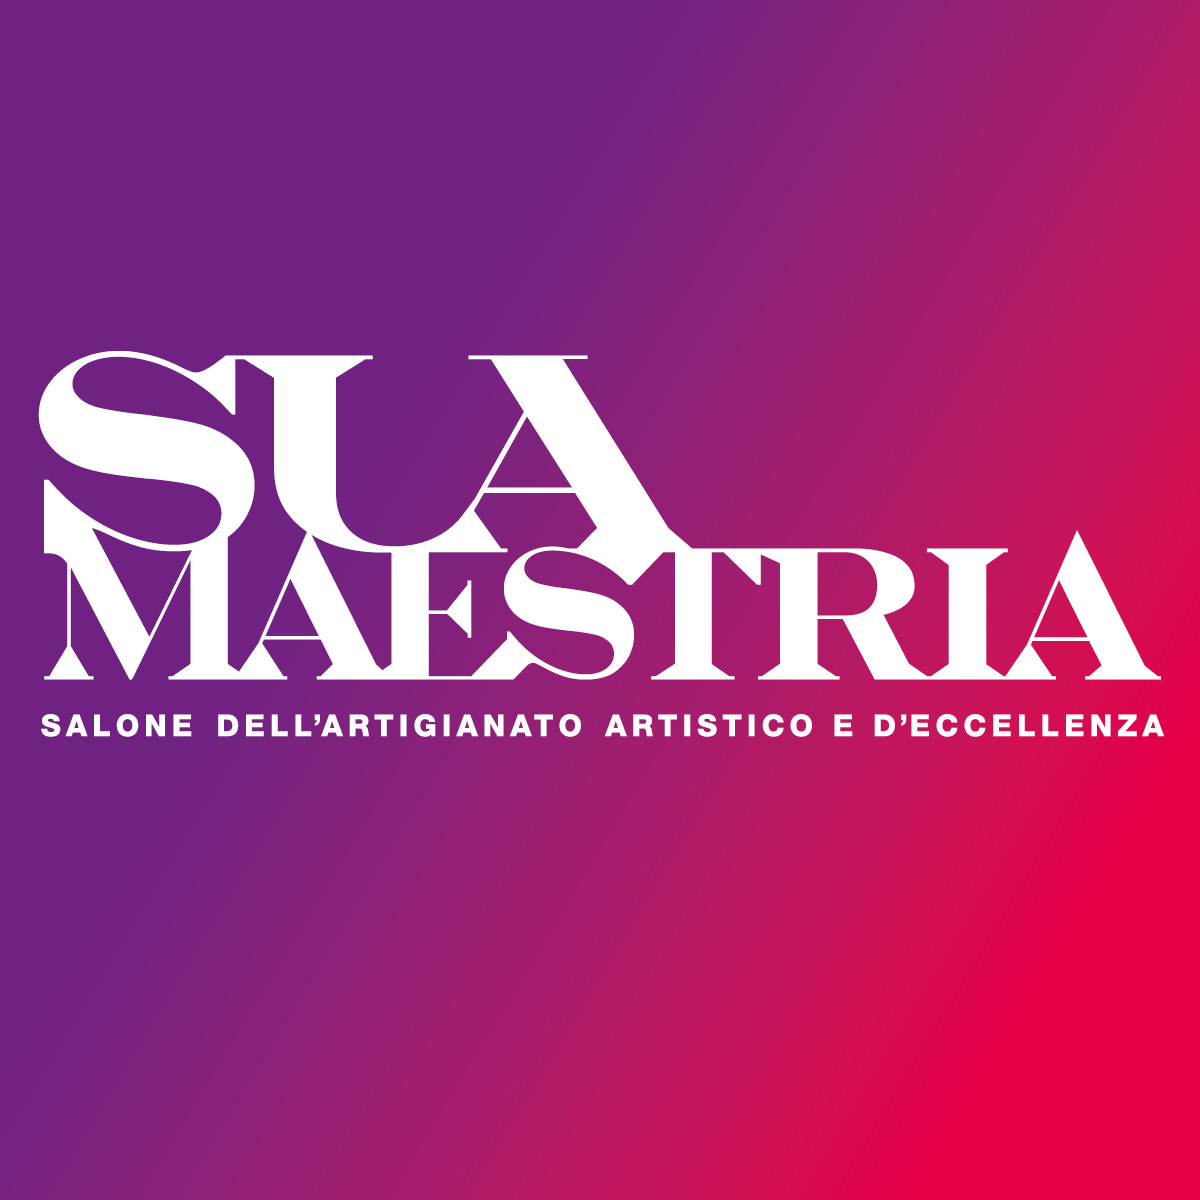 Sua Maestria: il nuovo salone dedicato ai ‘maestri’ artigiani